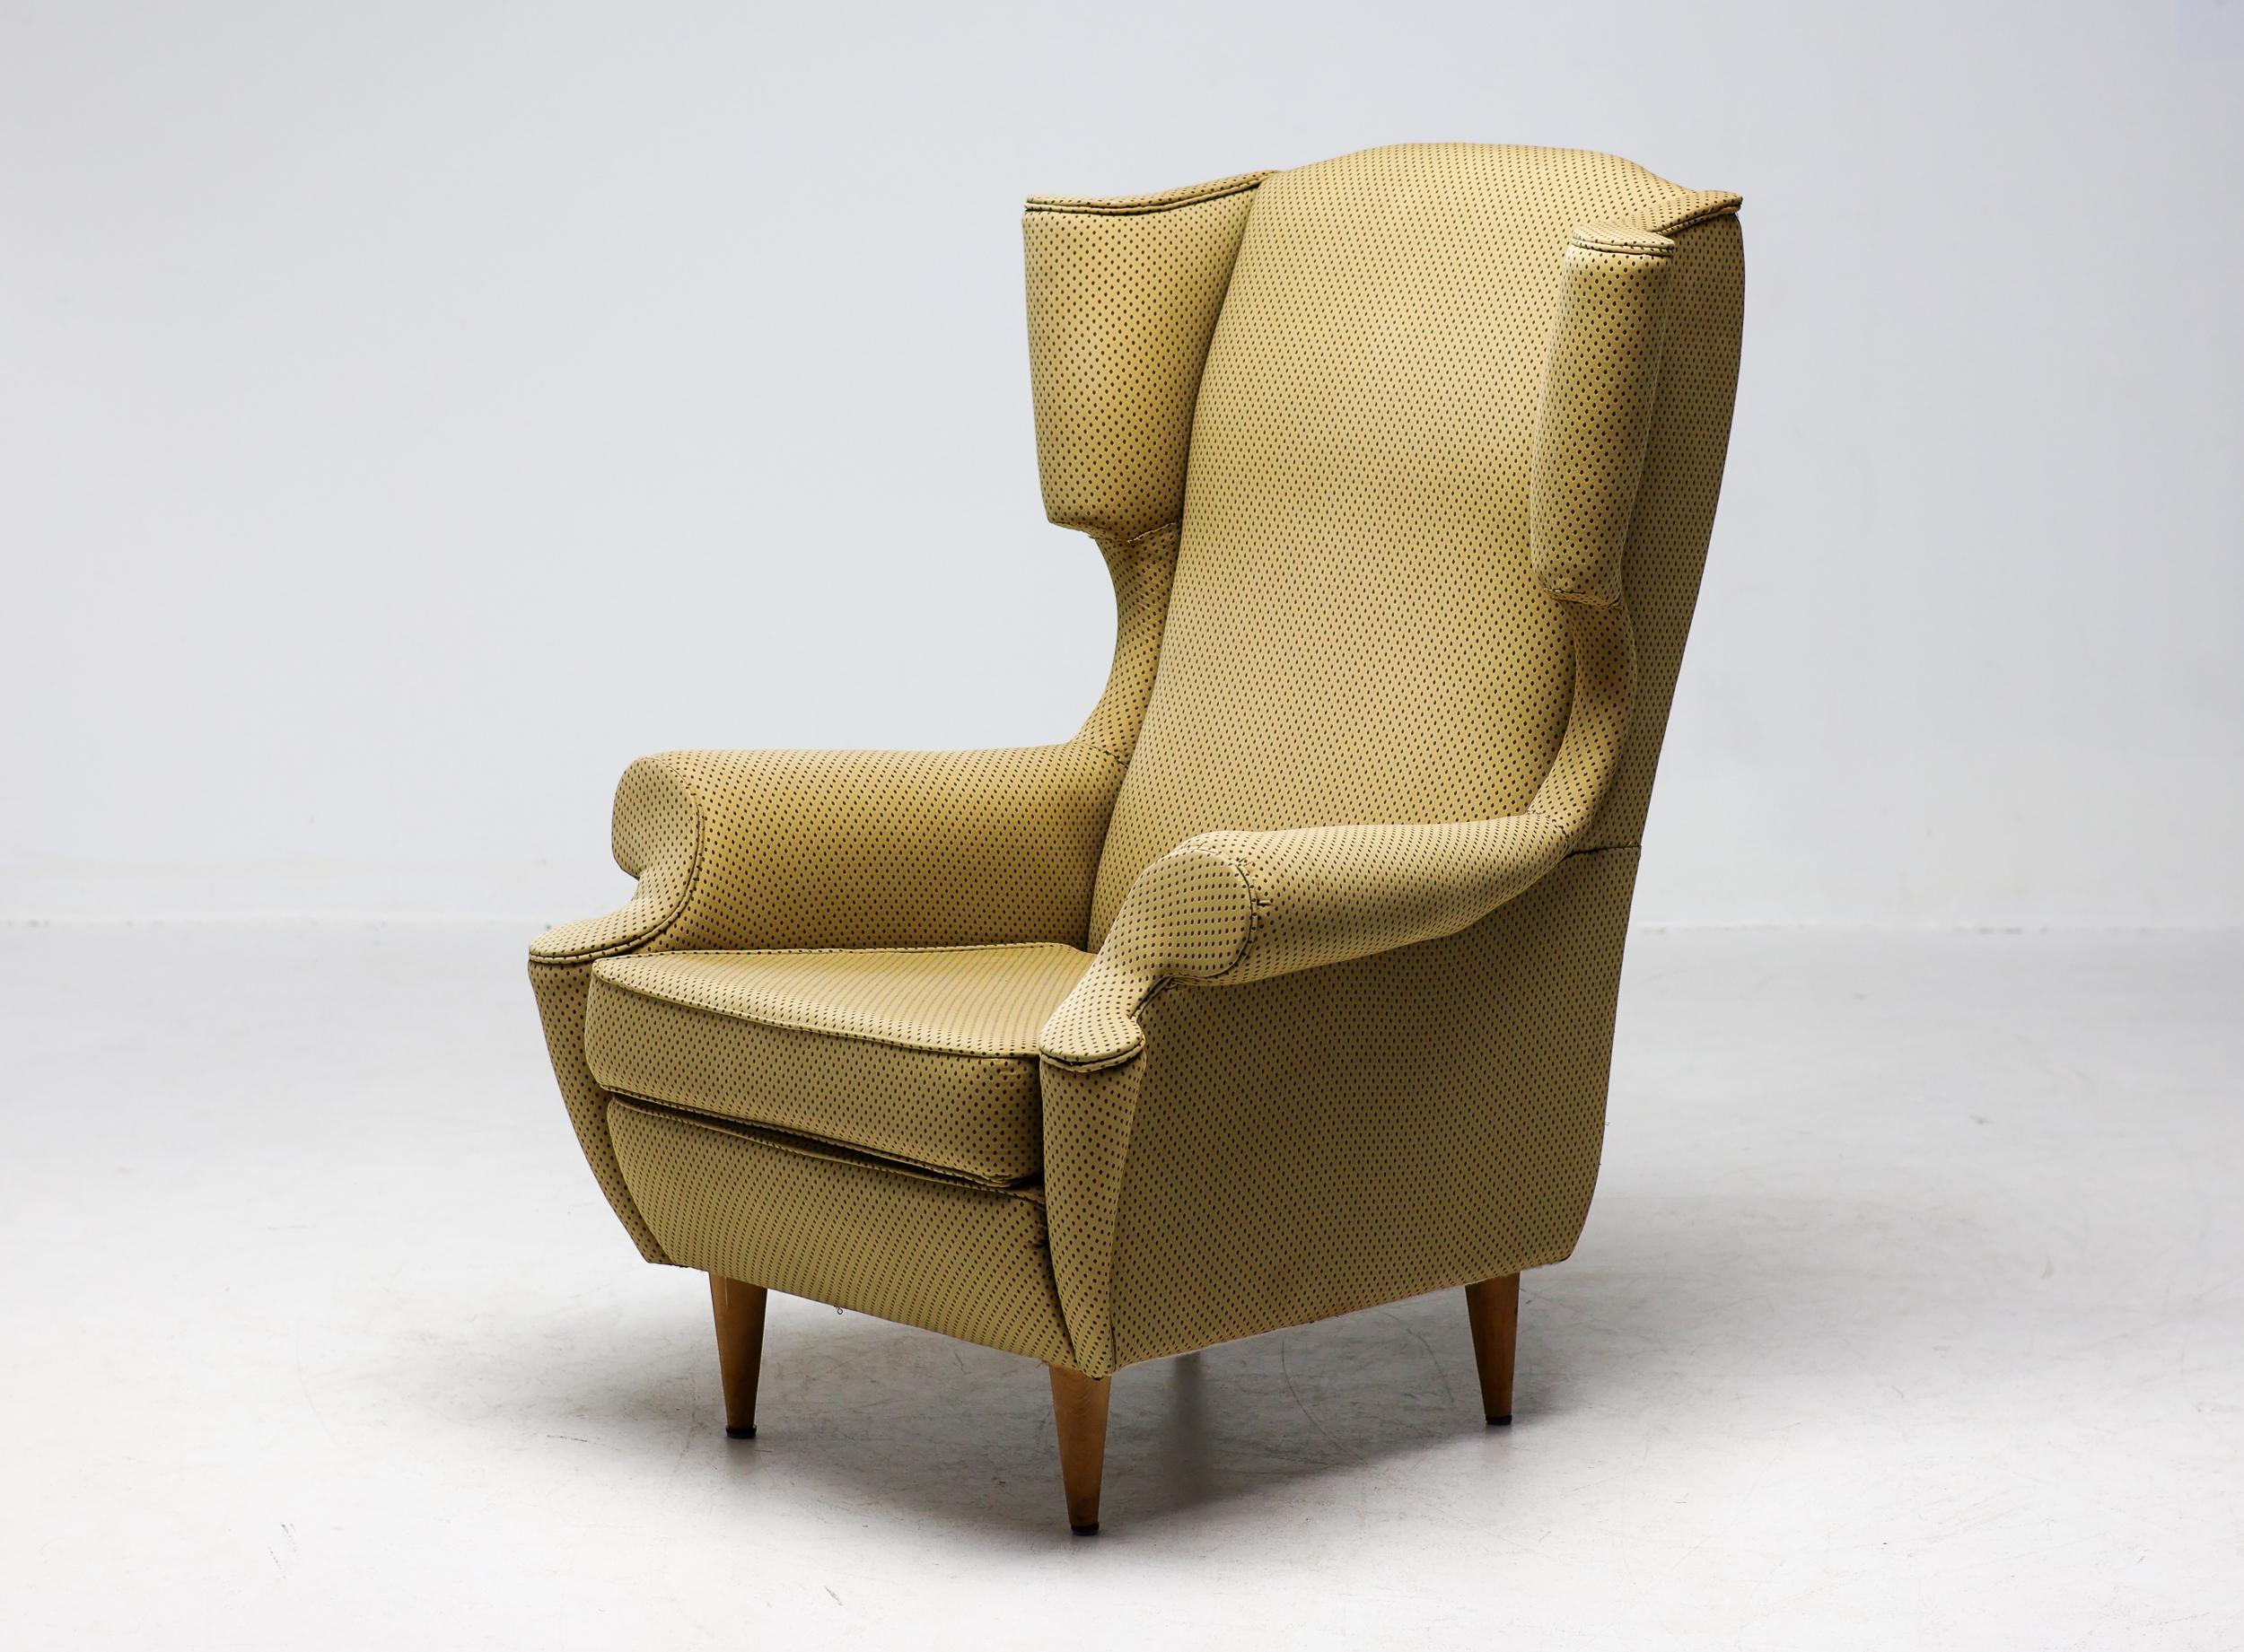 Ohrensessel, hergestellt von I.S.A. Bergamo, Italien, um 1950.
Großer und sehr bequemer Sessel, der irgendwann in der Vergangenheit ziemlich schlecht neu gepolstert wurde. Der Stoff ist nicht beschädigt oder verschmutzt, aber die Arbeit wurde